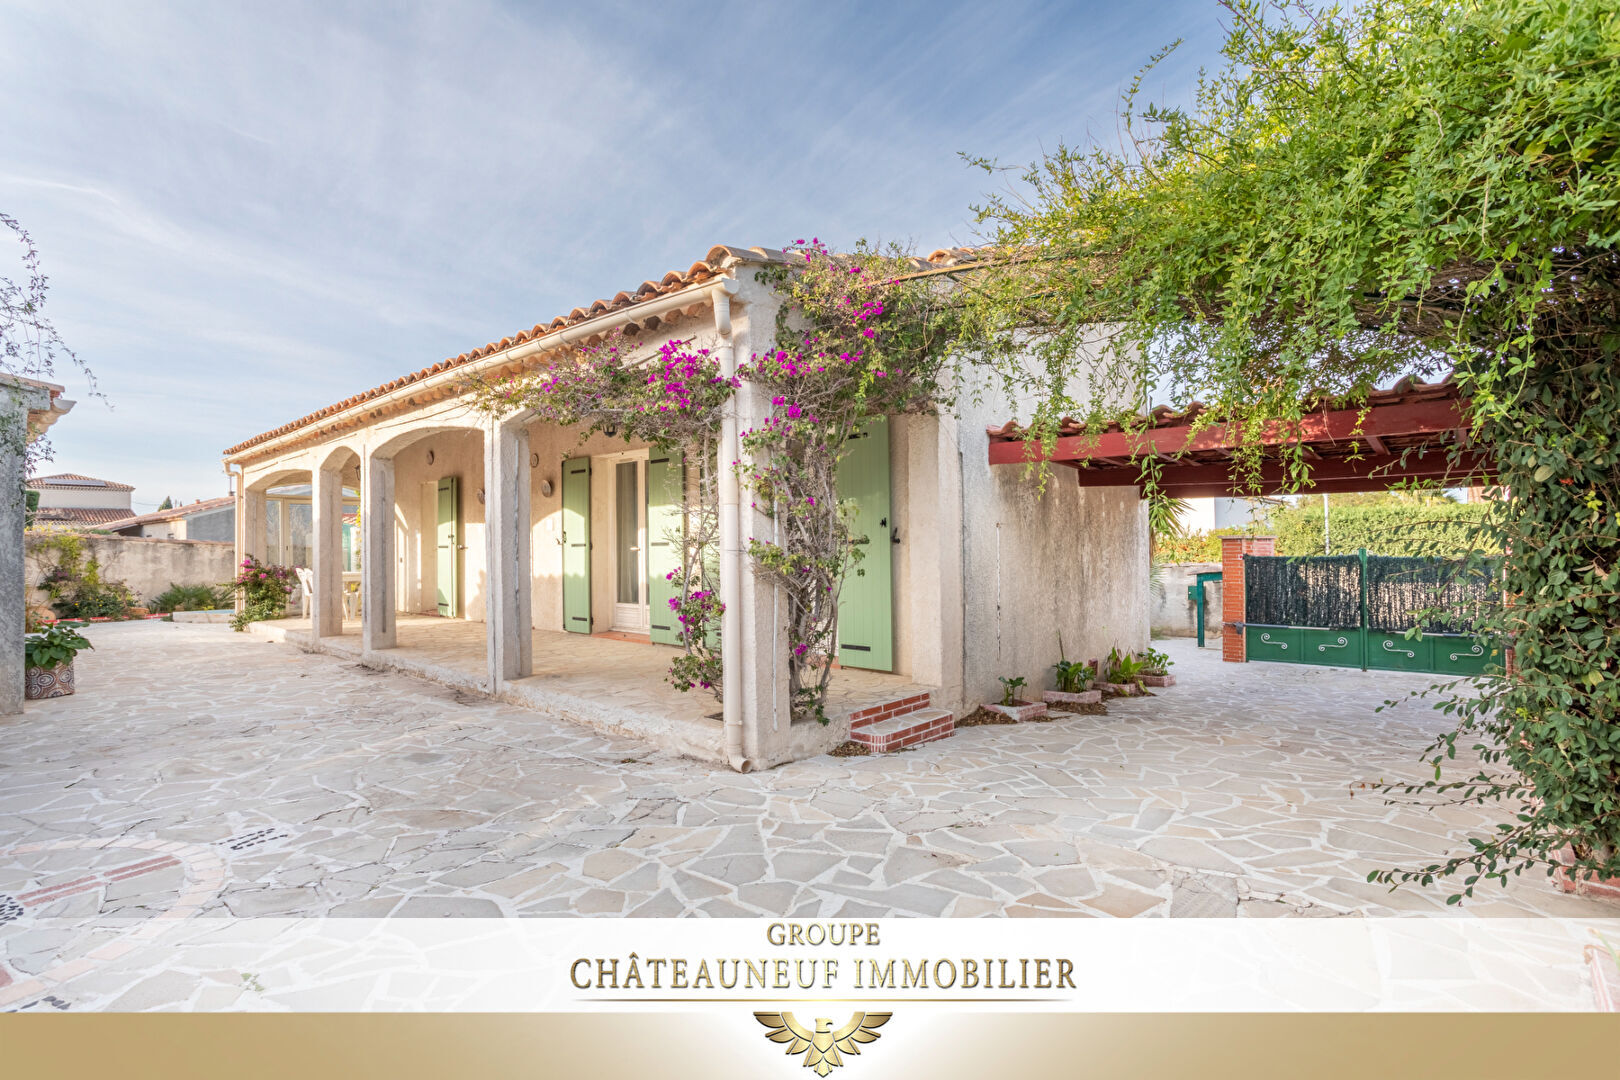 Chateauneuf ( La mède ) Maison Plain pied 90 m² sur 400 m² de terrain